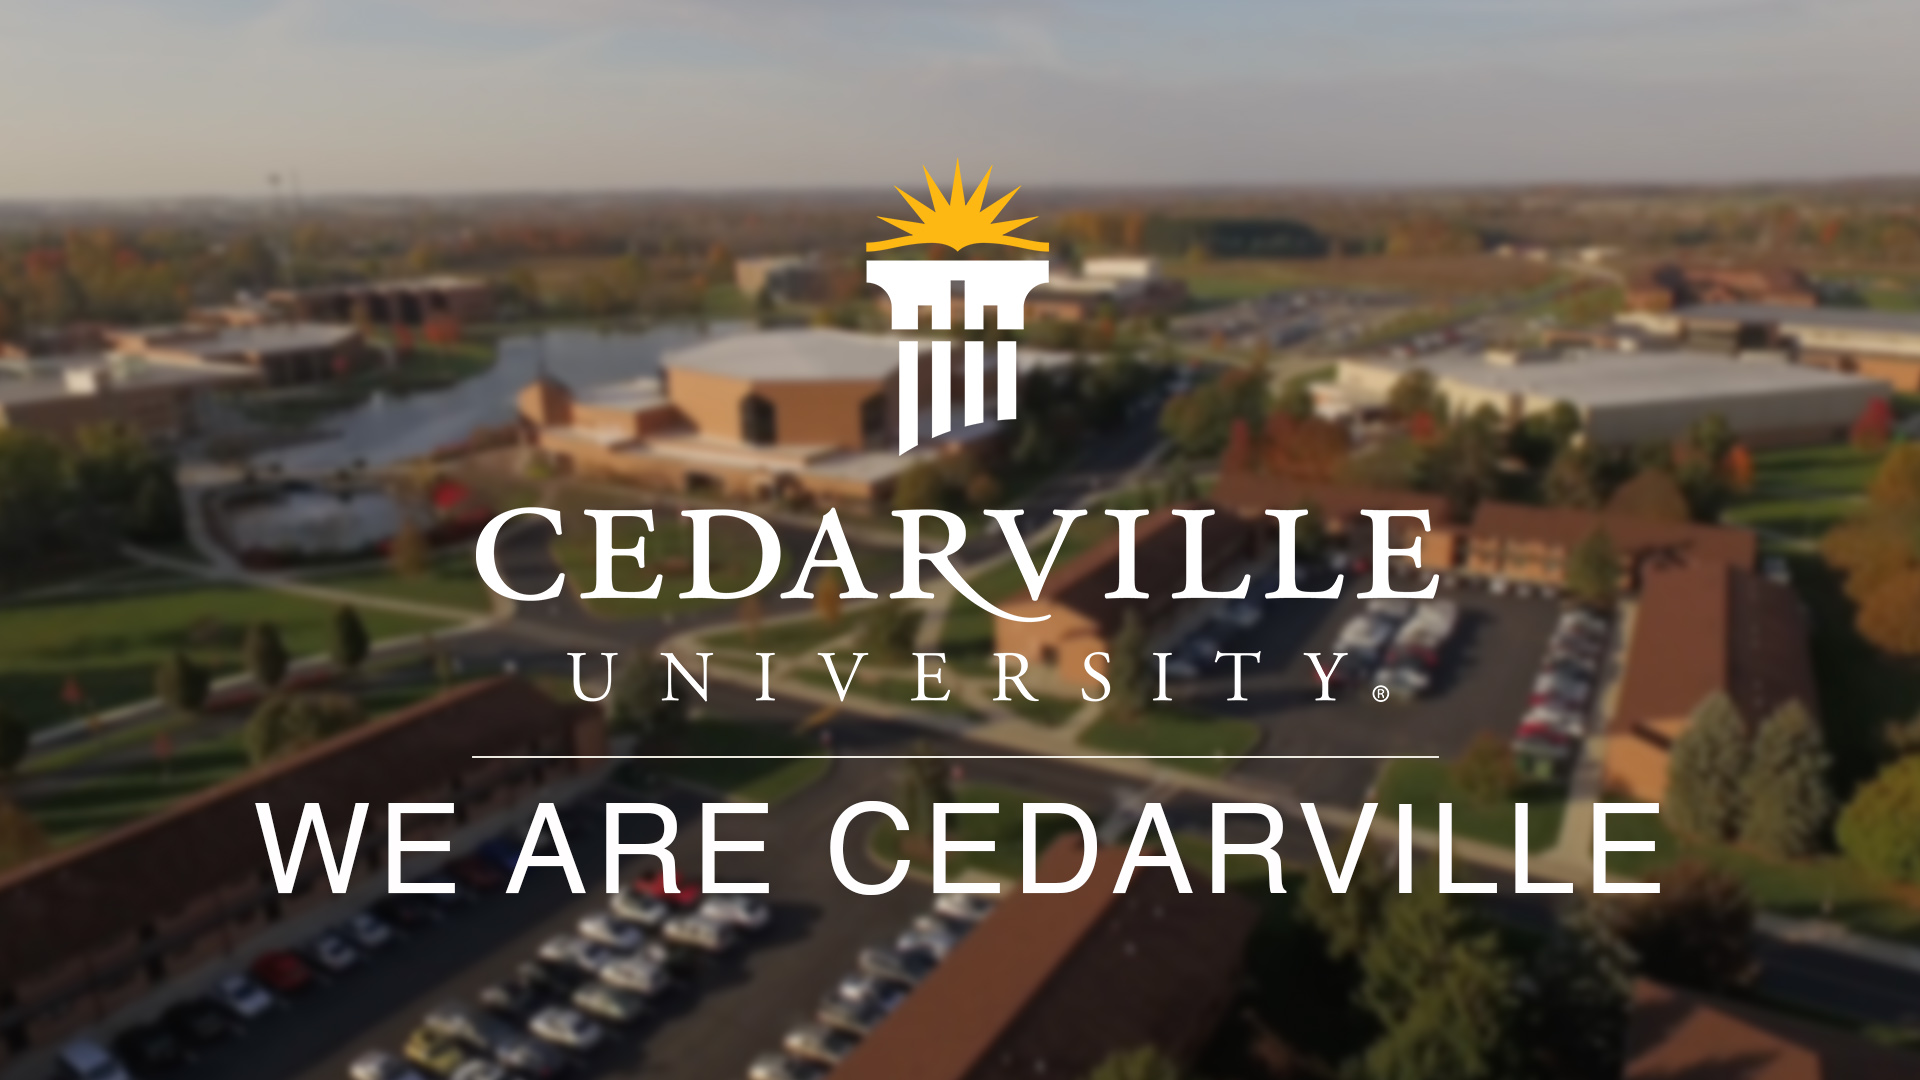 We are Cedarville Cedarville University